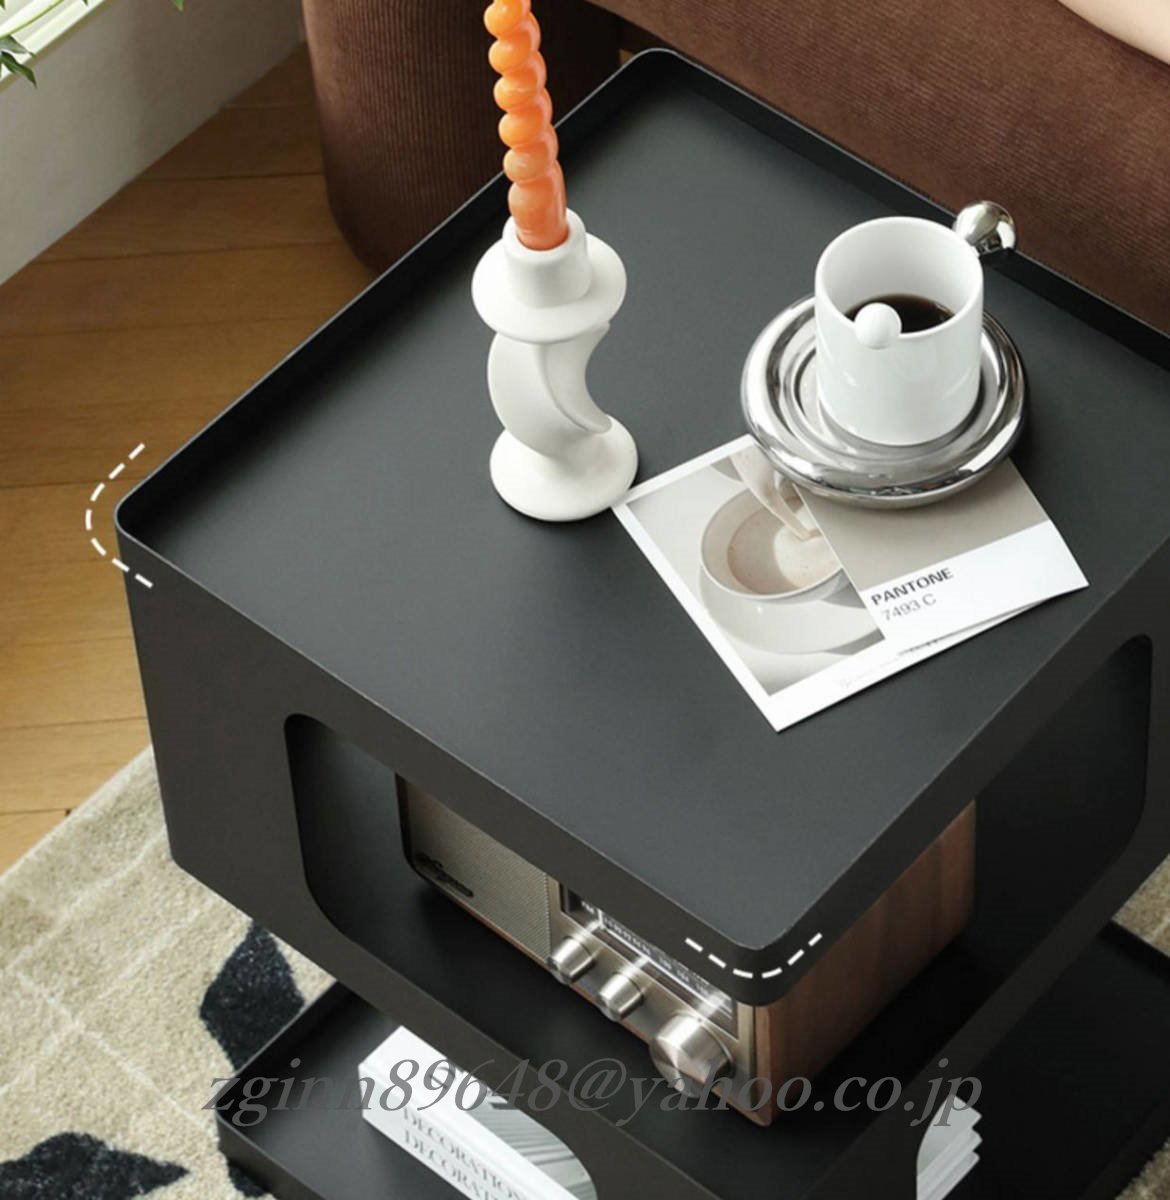 北欧風なソファサイドテーブル、個性的なクリエイティブな幾何学的デザイン、アイアン製の小さなテーブル コーヒーテーブル 白 黒_画像7